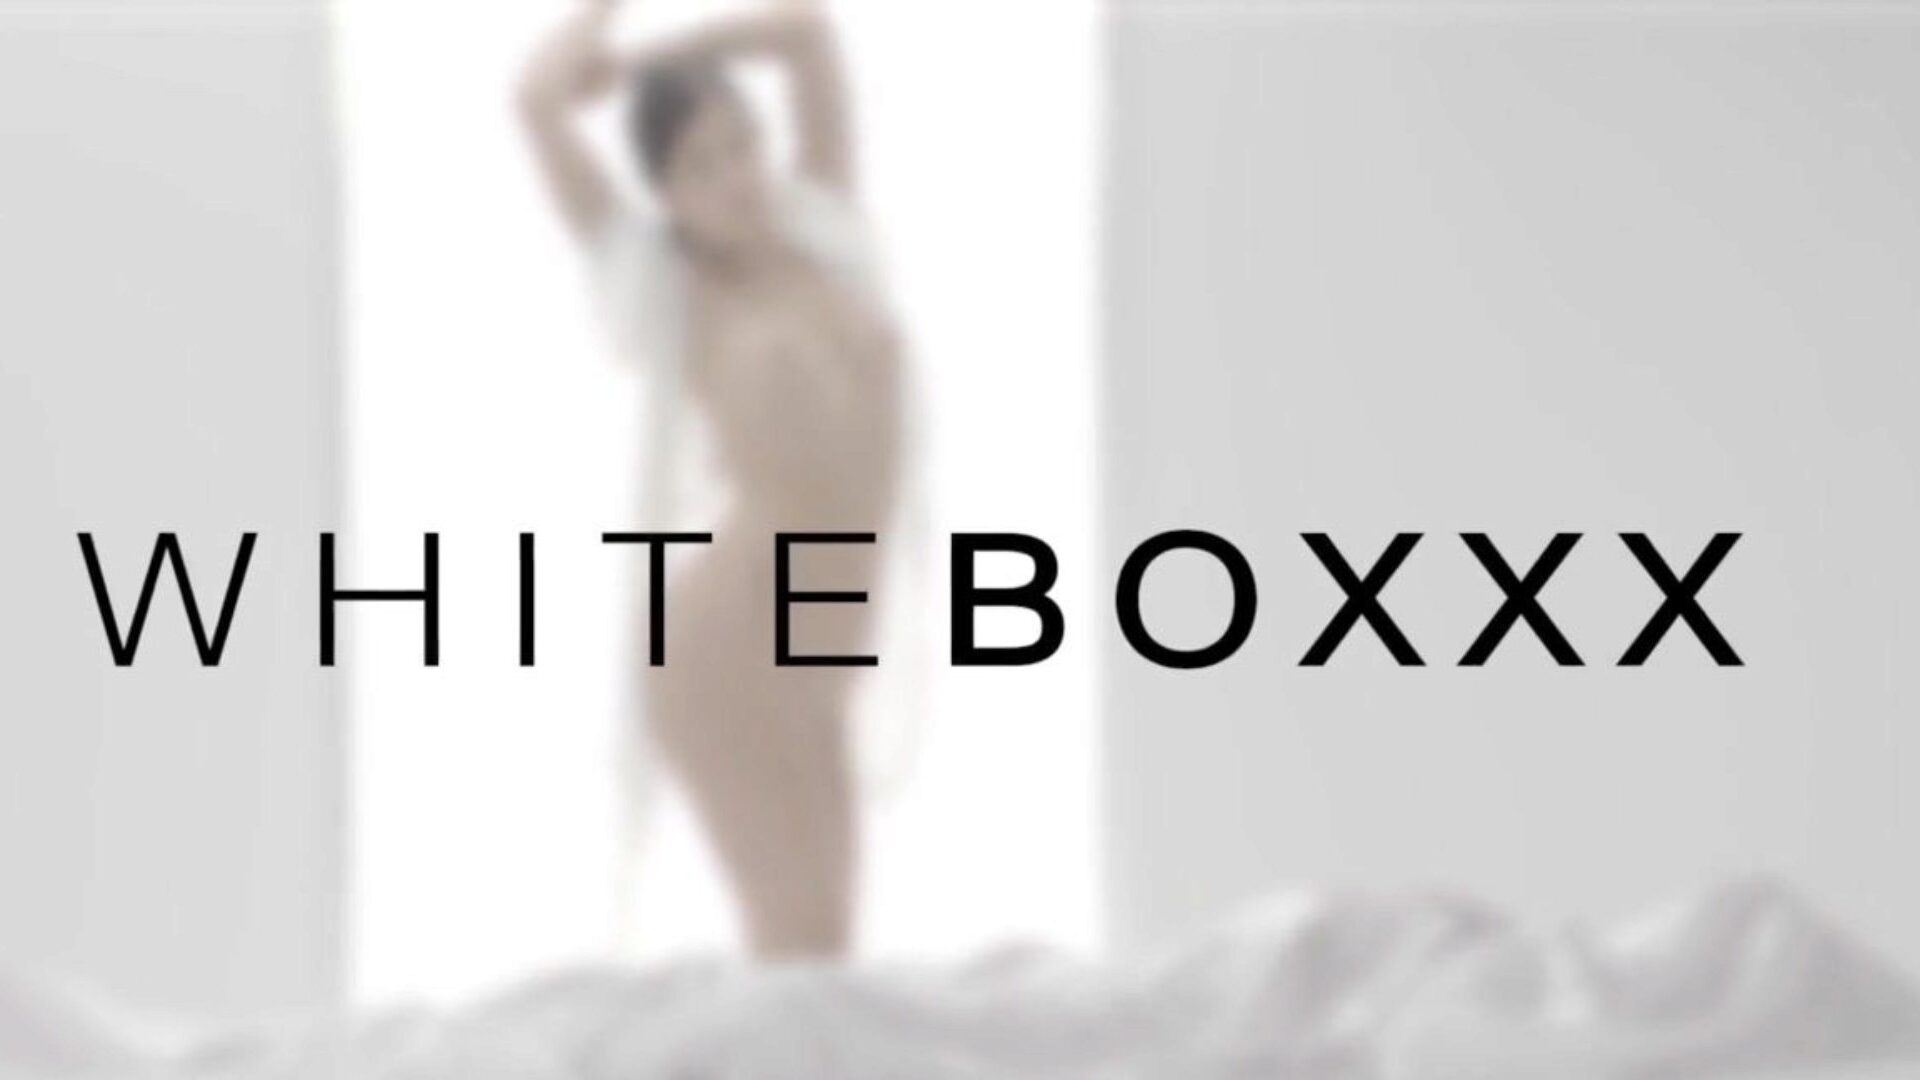 white boxxx - vruće tinejdžerke apolonia lapiedra i zazie skymm dijele svog ljubavnika